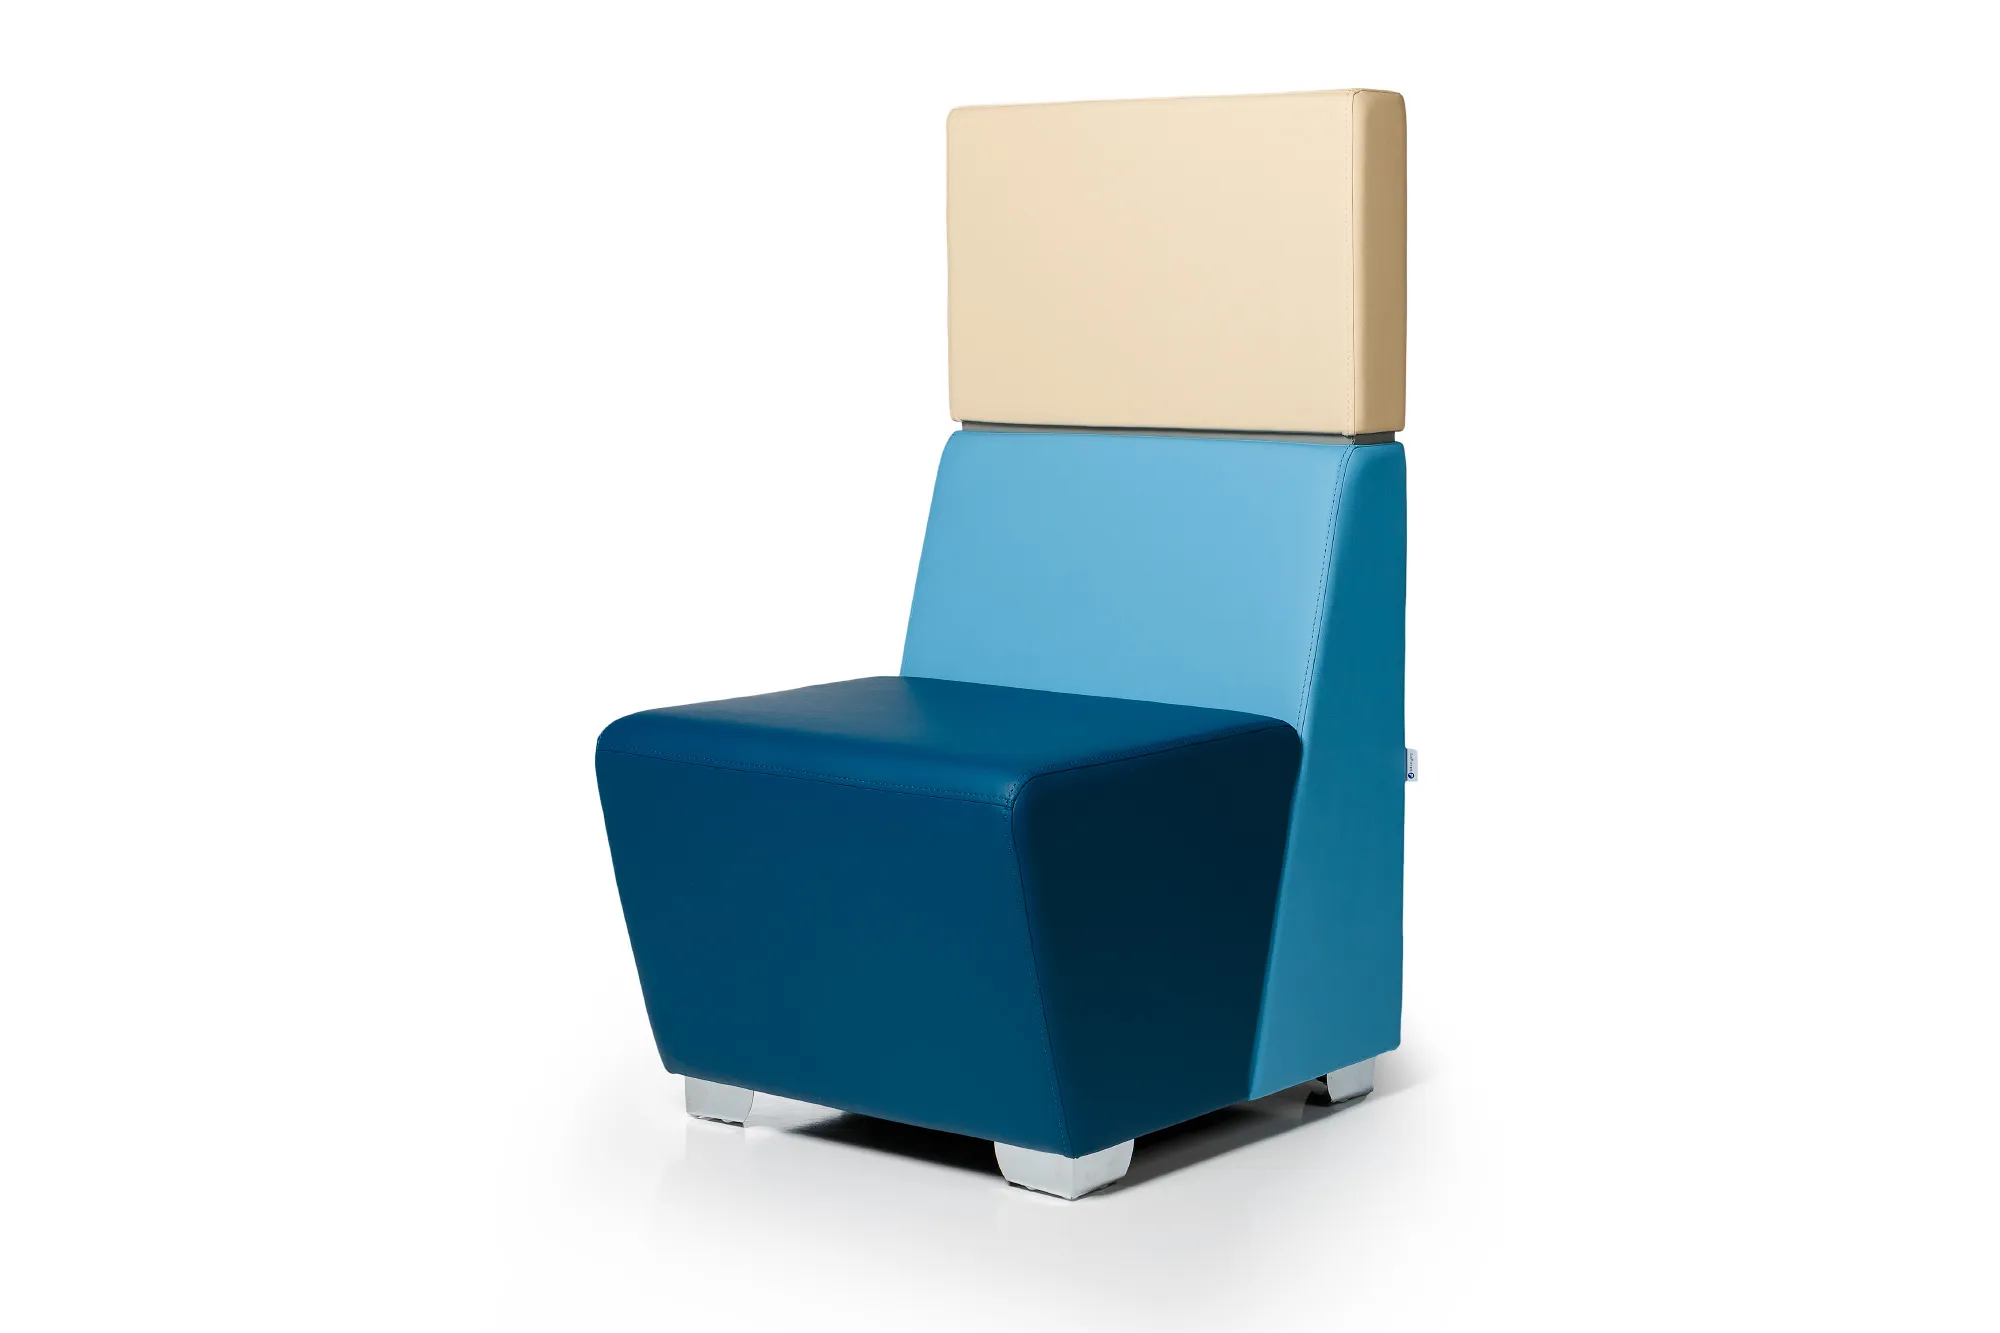 Кресло для посетителей toForm M33-1D2 высокая спинка 117 см